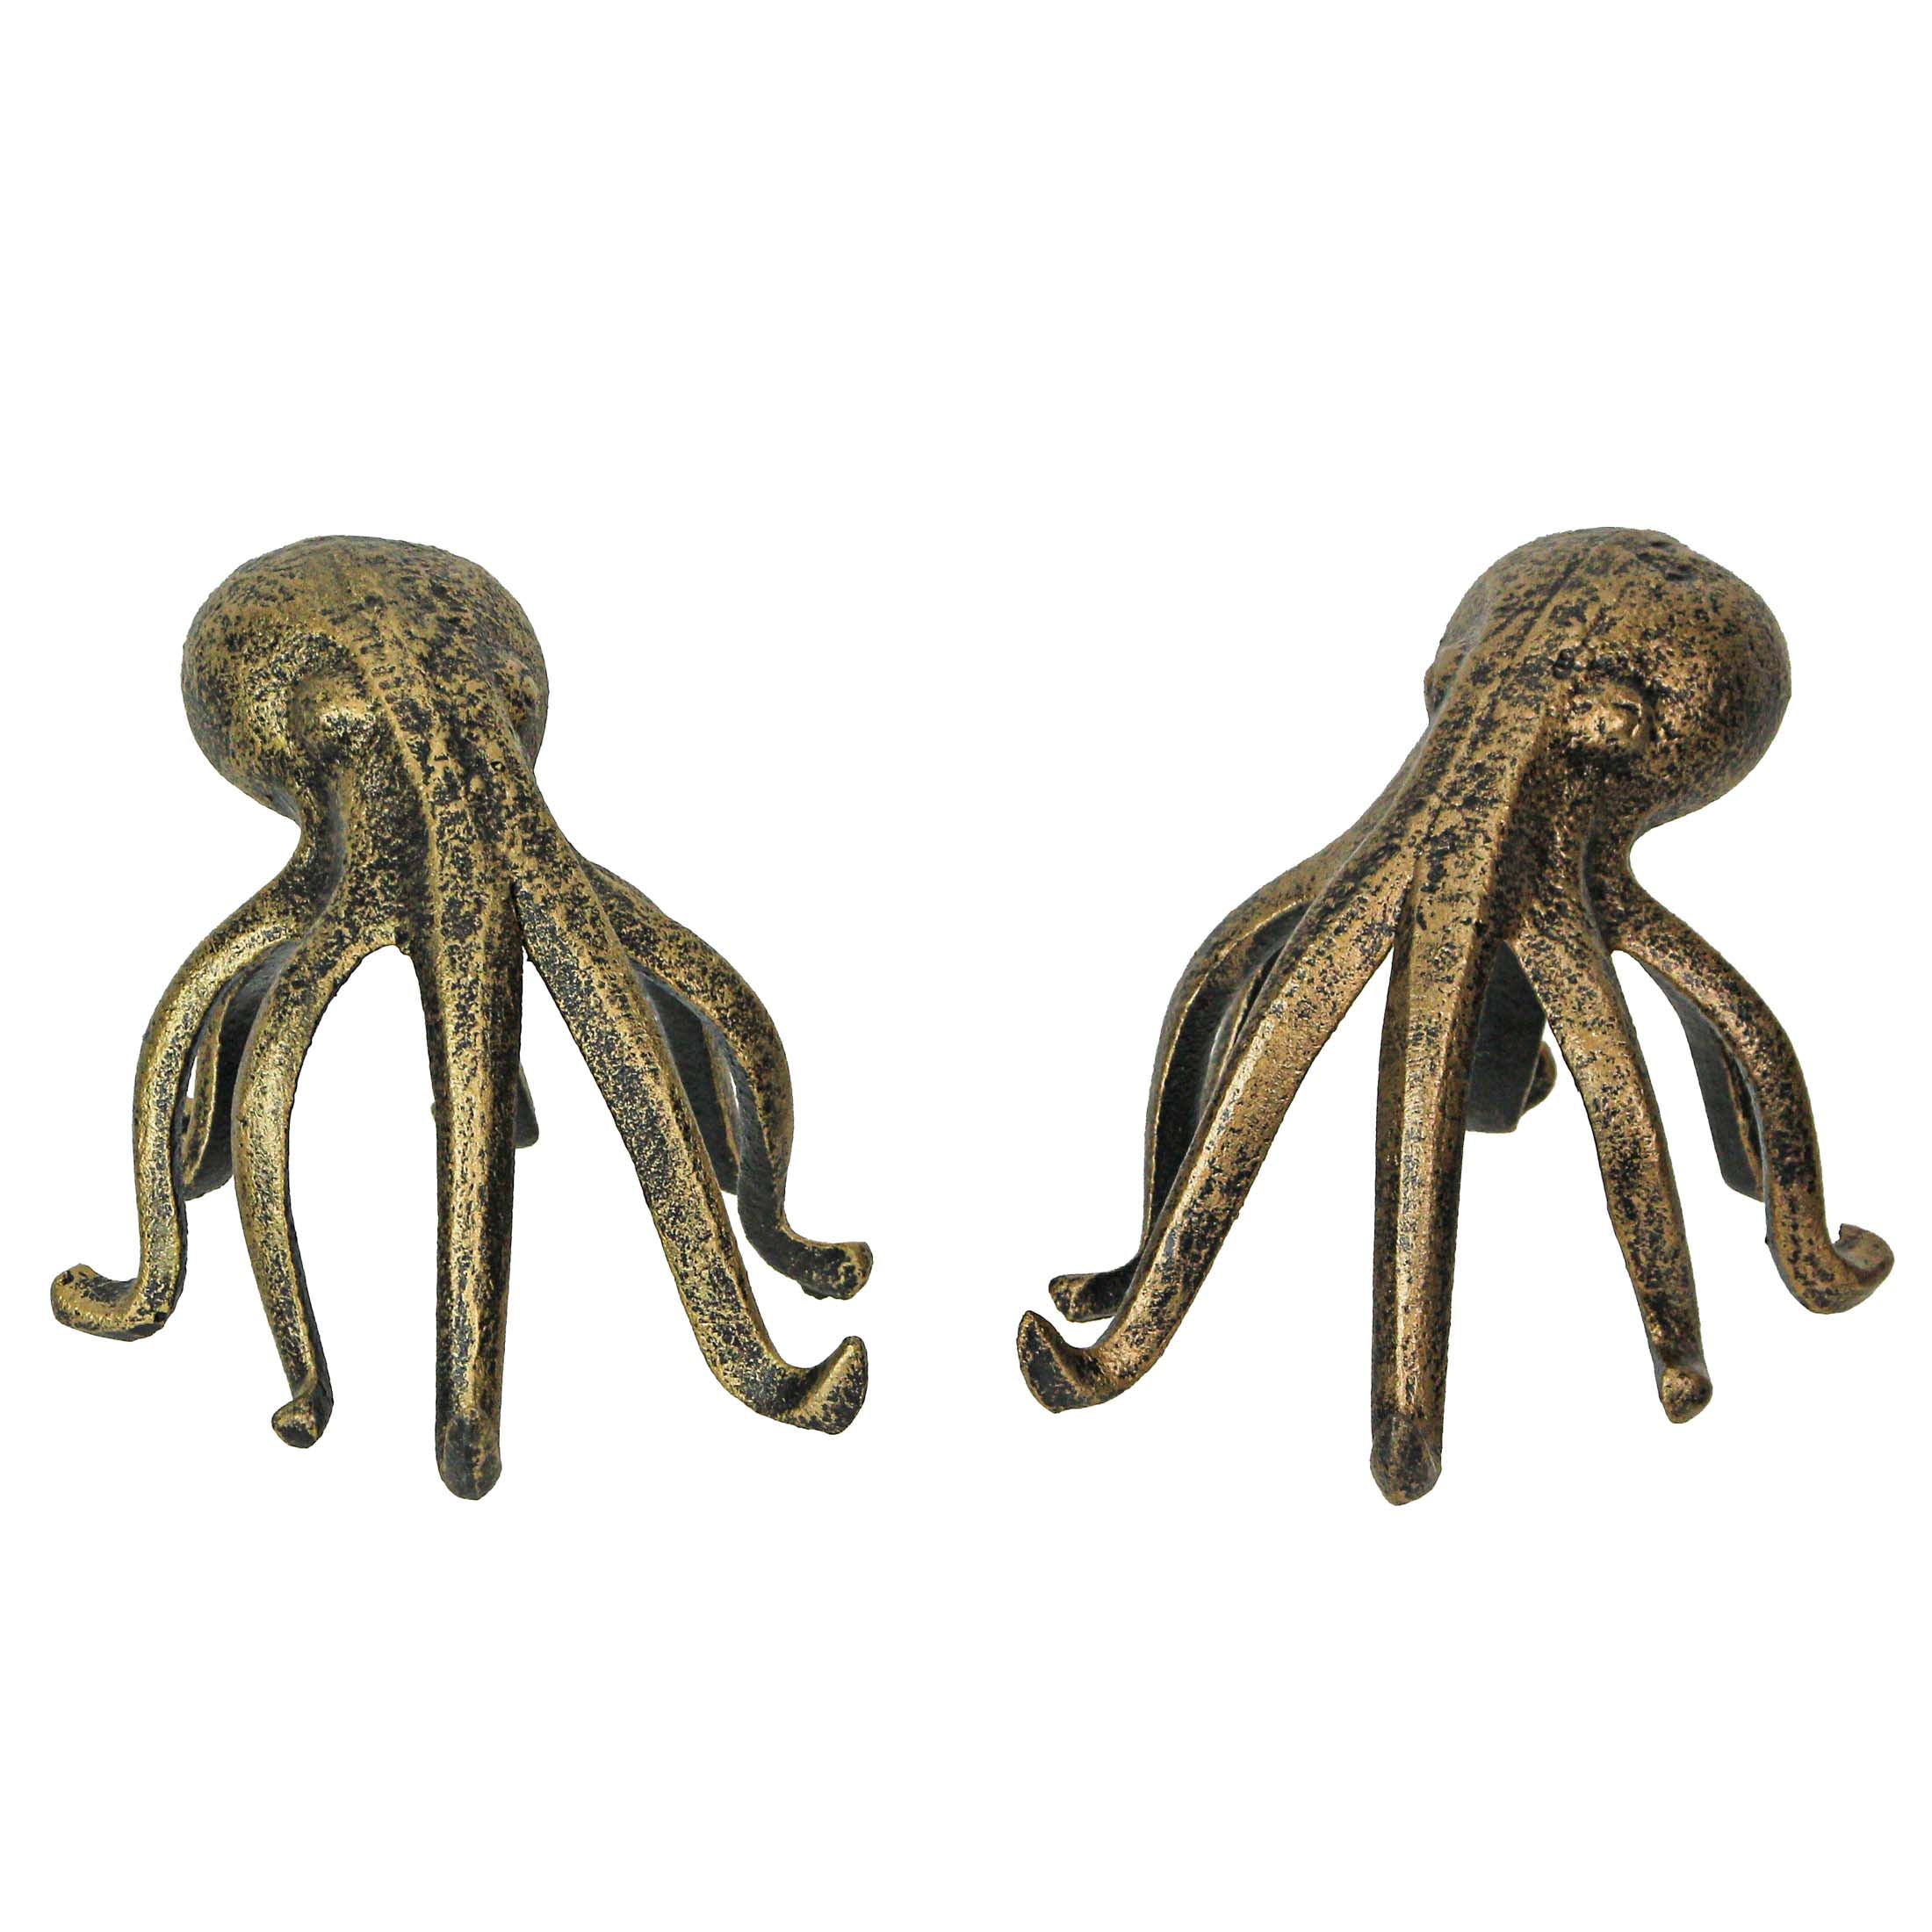 https://zeckos.com/cdn/shop/files/ZKO-99348-SET-gold-cast-iron-octopus-bookend-1B.jpg?v=1708663343